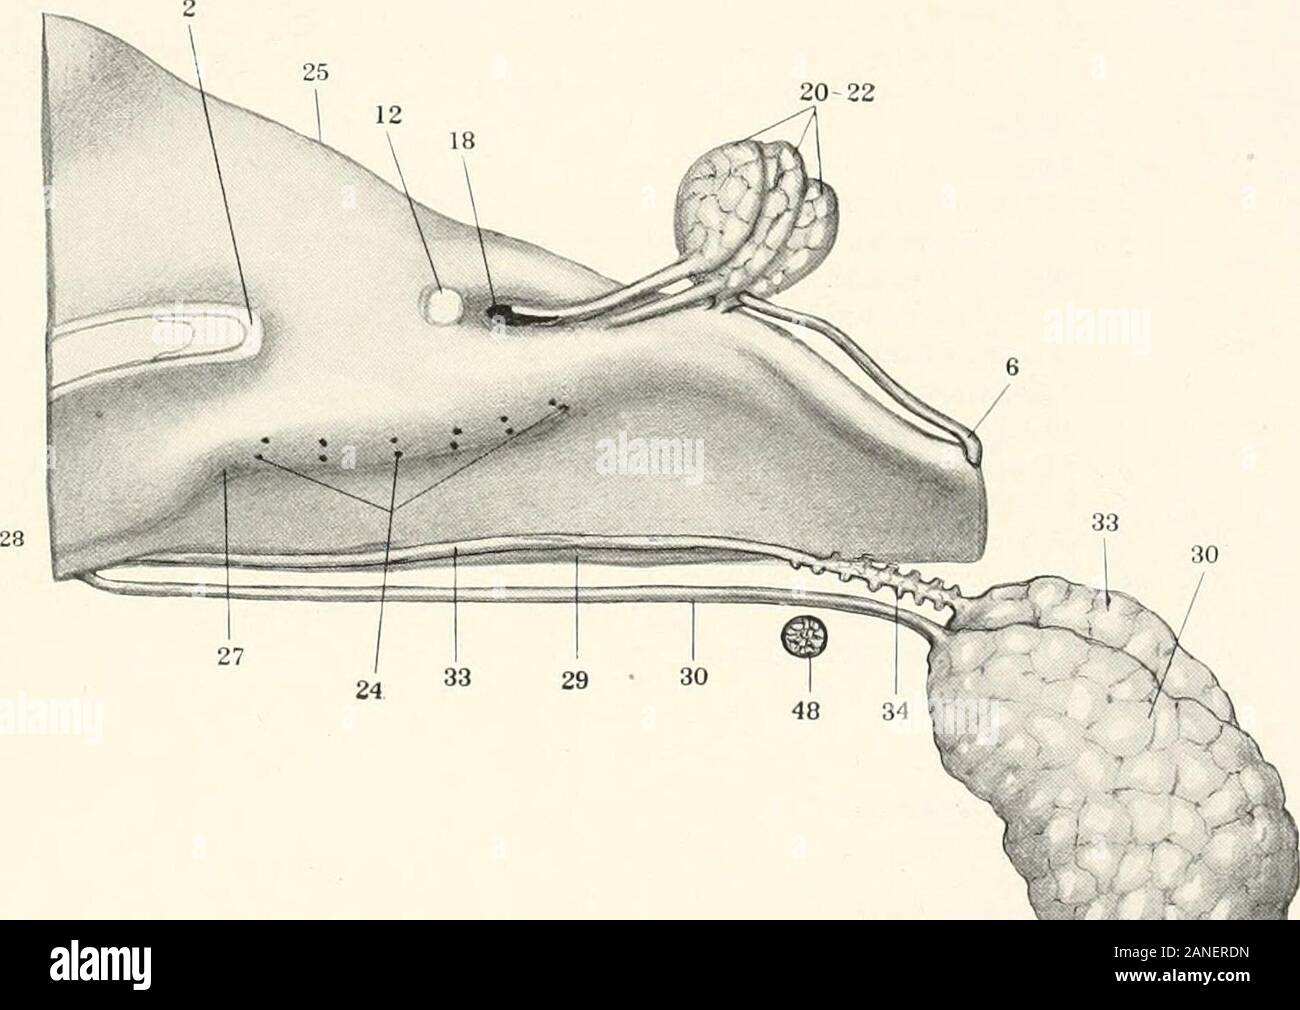 Contributions à l'anatomie et le développement des glandes salivaires dans la mammalia . FIG. 108. 28 Un 20-22. Fig. 109. LXXIII plaque Fig. III. Camera lucida dessin d'une section frontale passant par le fixer-ment de la troisième glande orbitale près de son extrémité crânienne, dans les 51 milli mètres embryon. Colombie-britannique Collection, n° 104, X 85, réduit à 5. Fig. 112. La même. L'article passe par l'extrémité caudale de l'attacher-ment de la troisième glande orbitale, X 85, réduit à 5. Fig. 113. La même. . Plus de nageoire caudale à travers le corps de la deuxième, orbitalgland X 85, réduit à j. 6. Orbital Banque D'Images